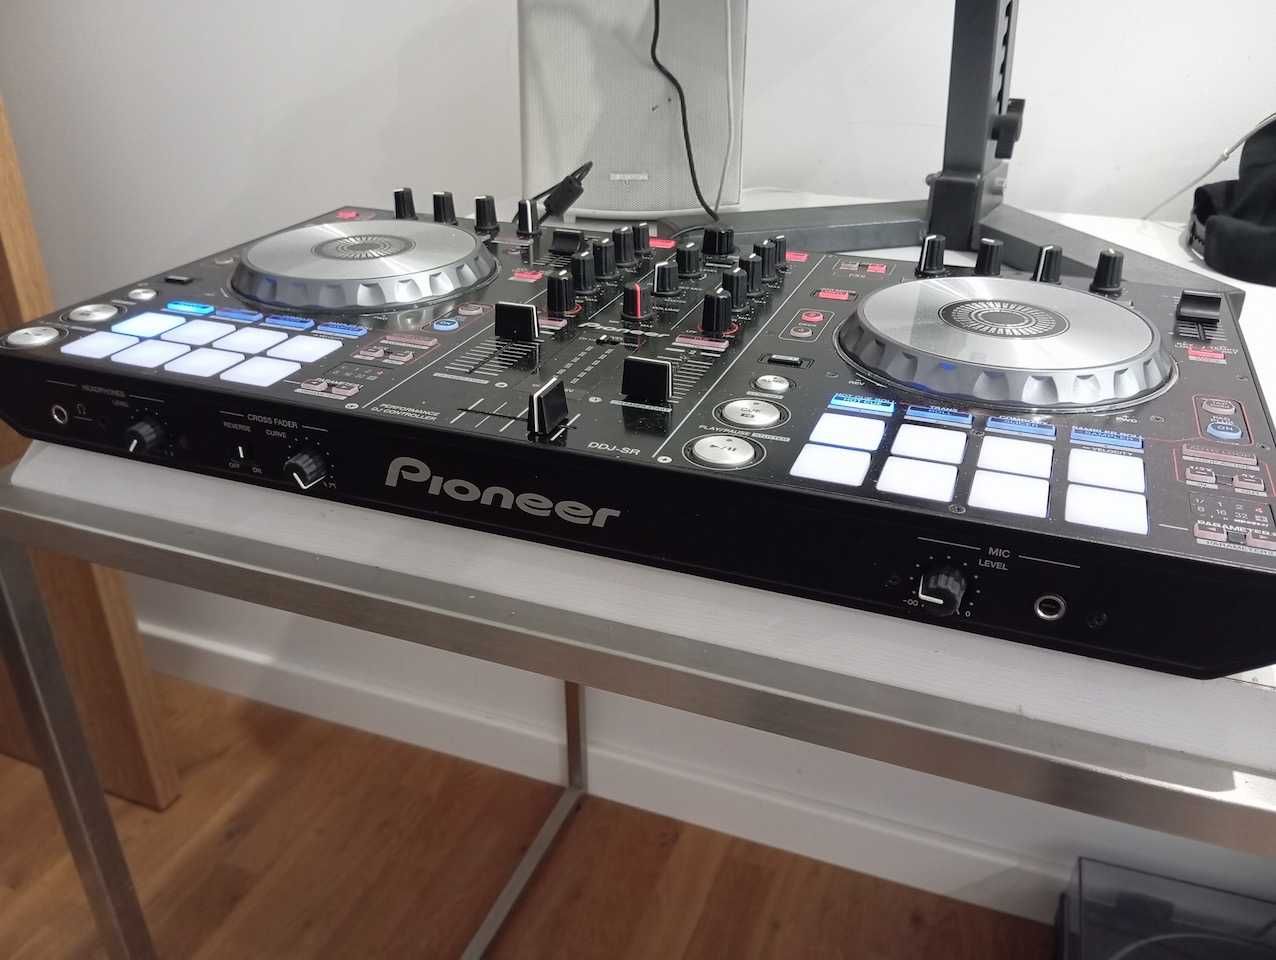 Kontroler dla DJ'a Pioneer DDJ-SR do Serato DJ